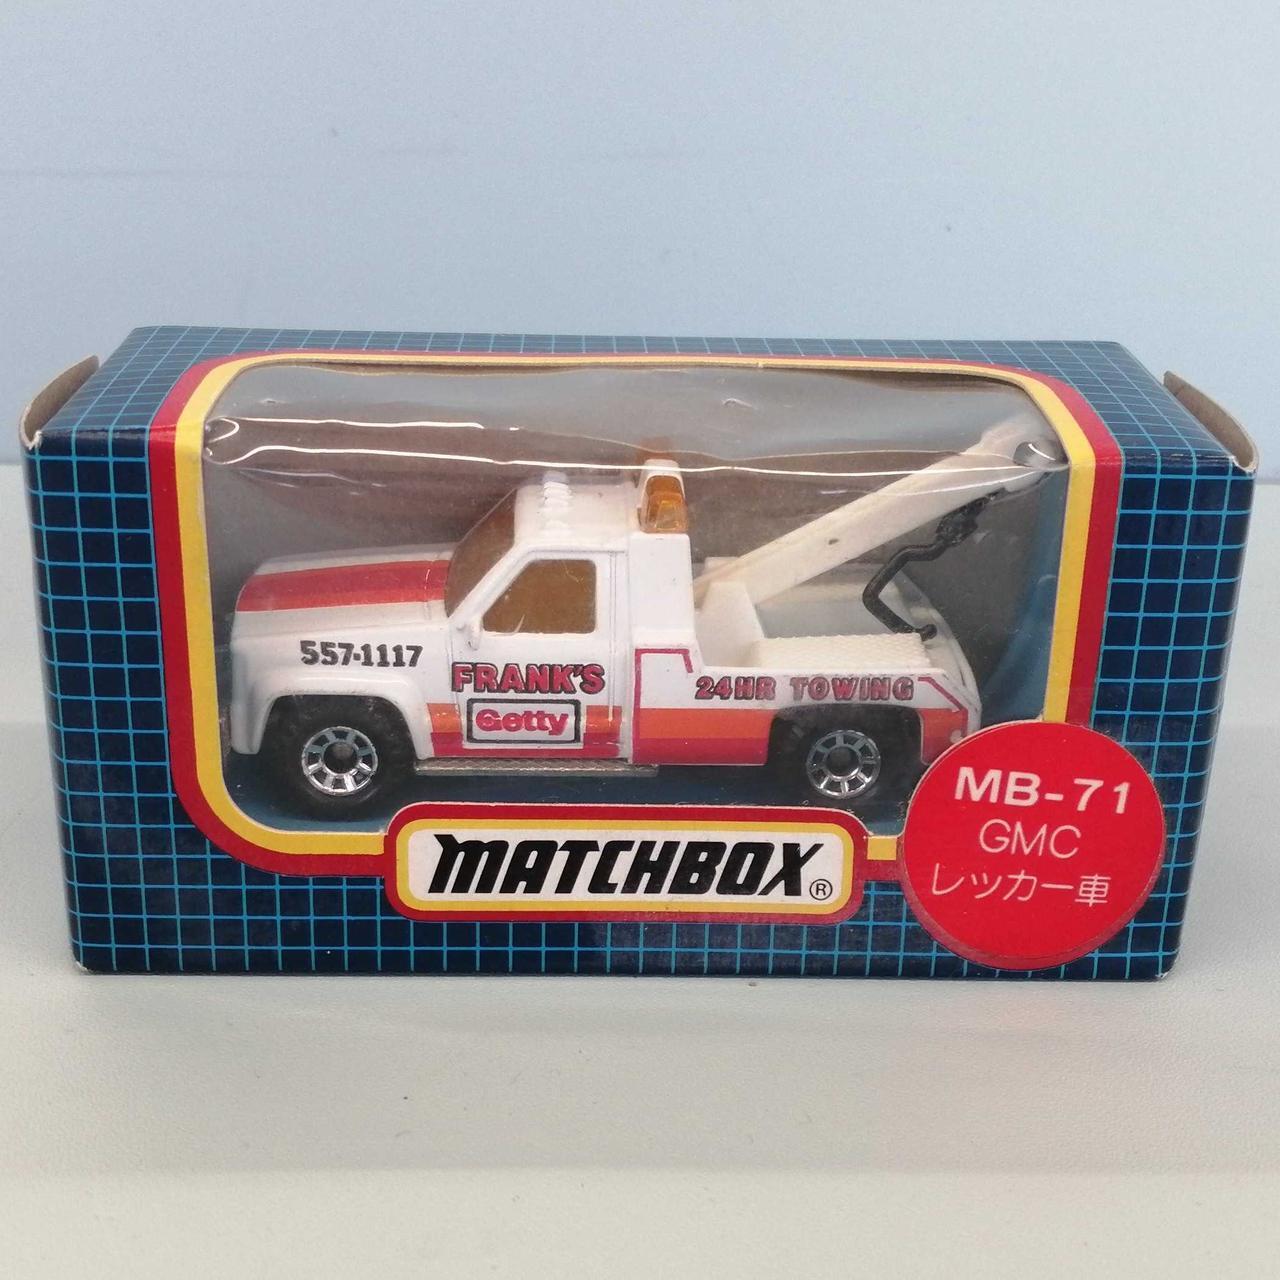 Matchbox Mb-71 Gmc Tow Truck